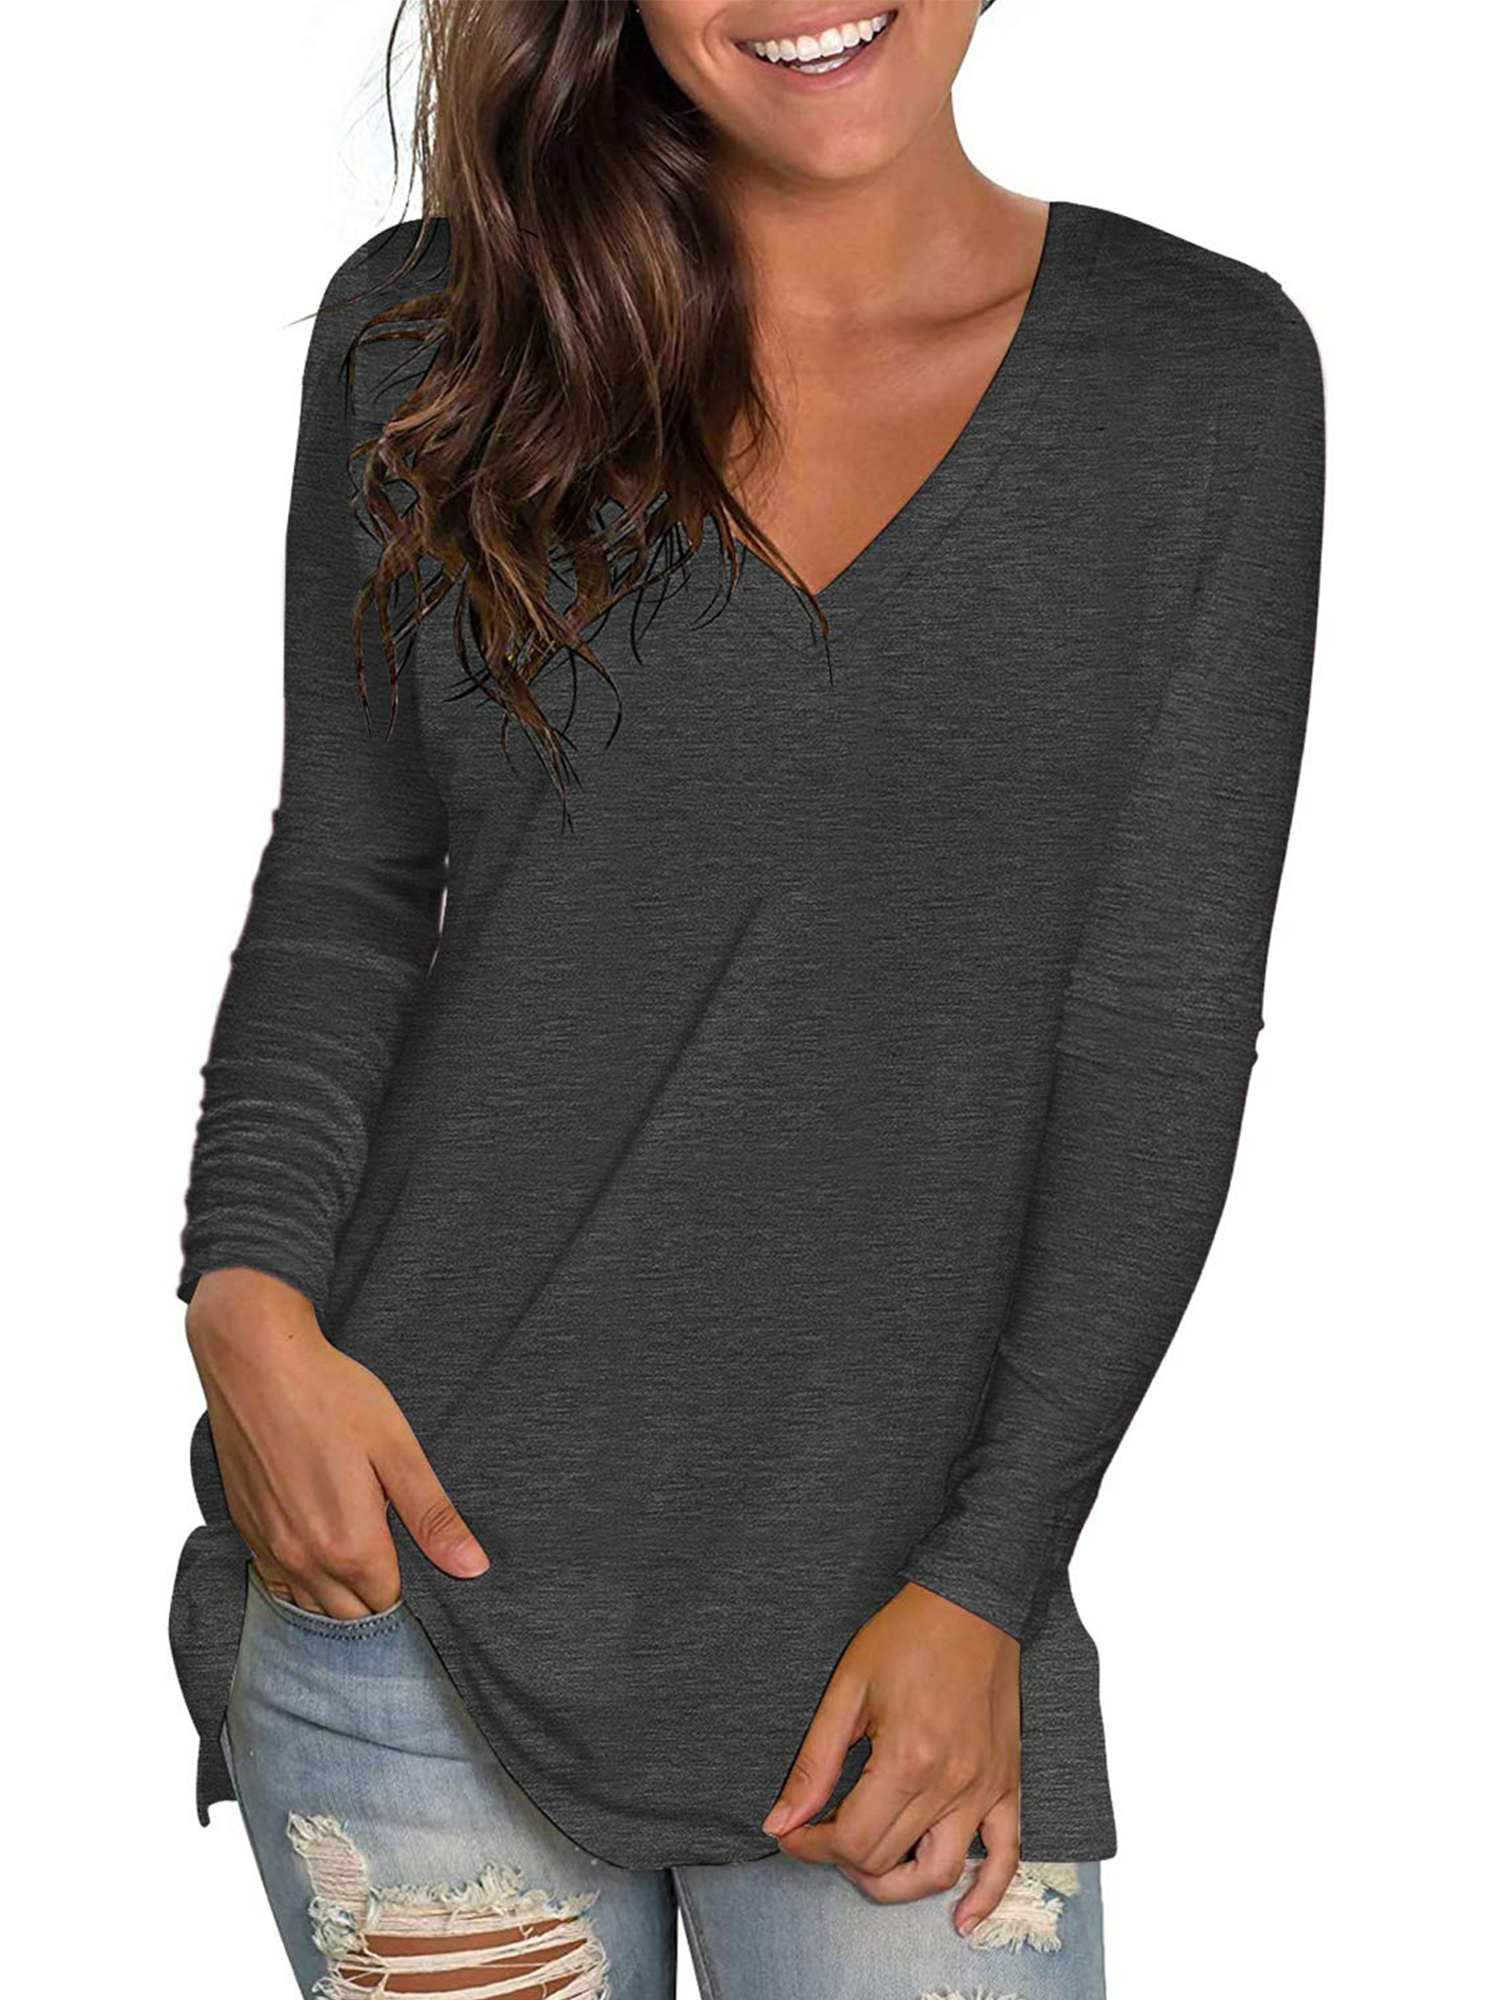 Women Fashion Sexy Sheer T Shirt Mesh Top Transparent Tops - Walmart.com